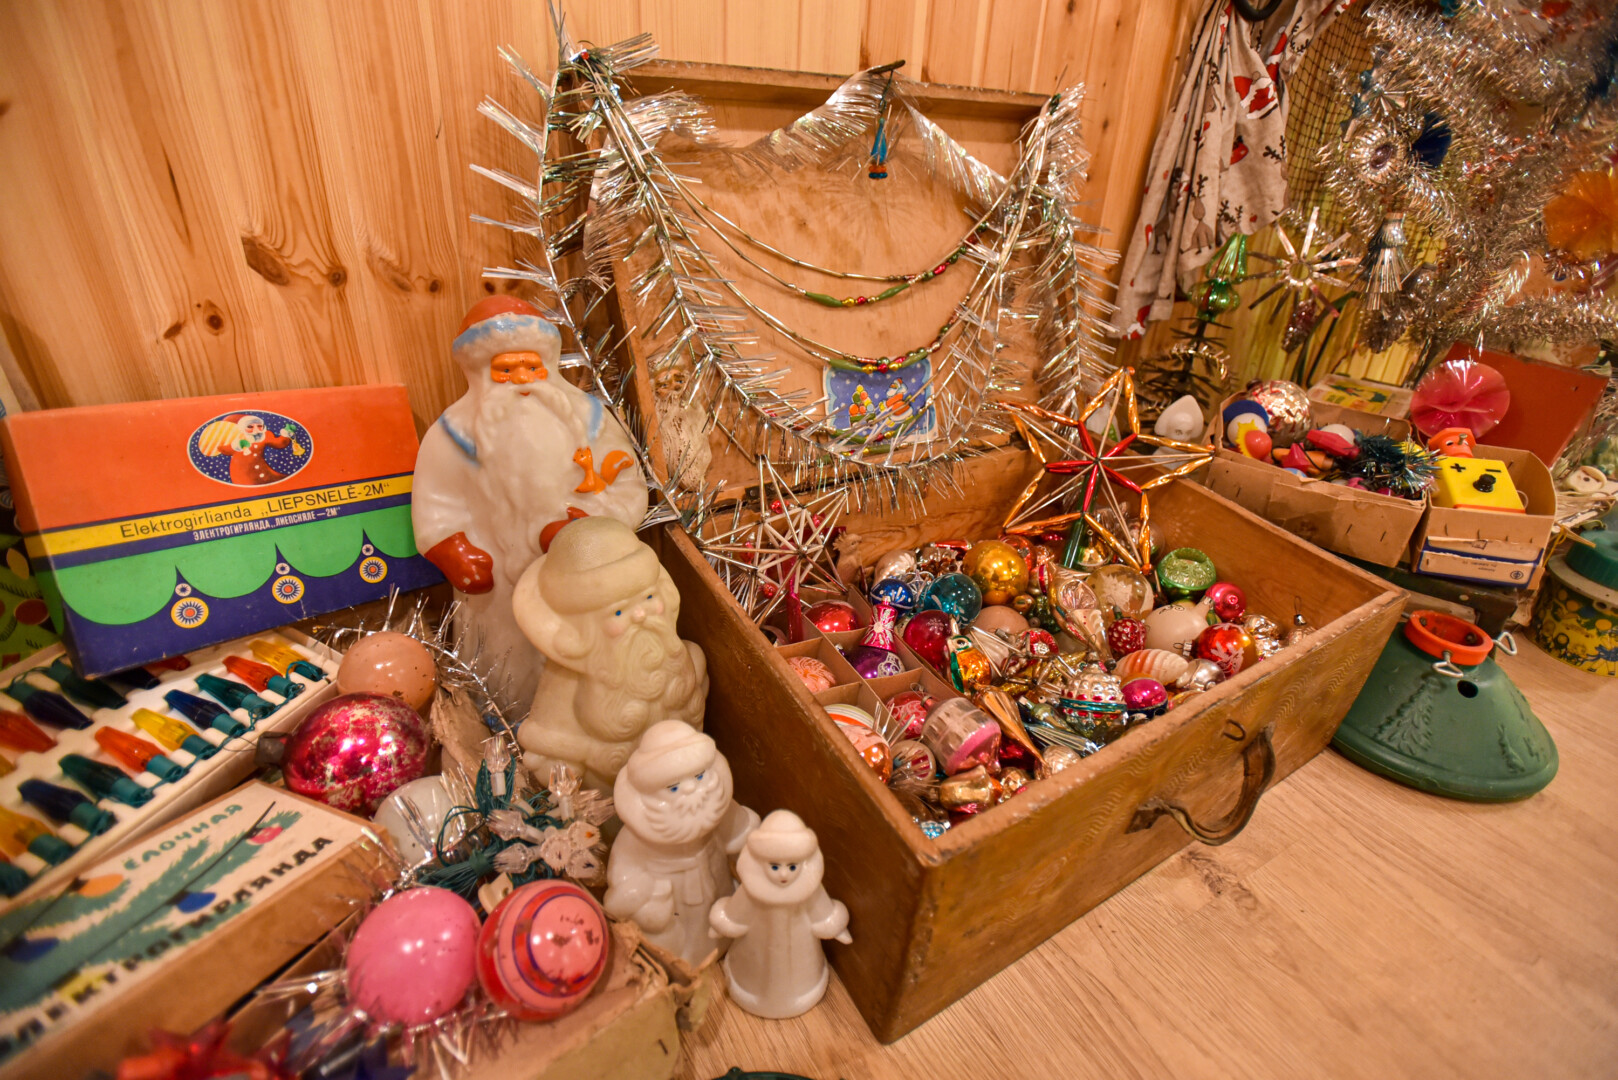 Artėjant Kalėdoms, ir vaikų, ir suaugusiųjų ekskursijos, o ir pavieniai smalsuoliai skuba aplankyti Miežiškiuose esantį vienintelį ne tik Lietuvoje, bet ir Baltijos šalyse Kalėdinių žaisliukų muziejų. Dabar istorinėmis Kalėdų puošmenomis pasidžiaugti galima ir Panevėžyje.